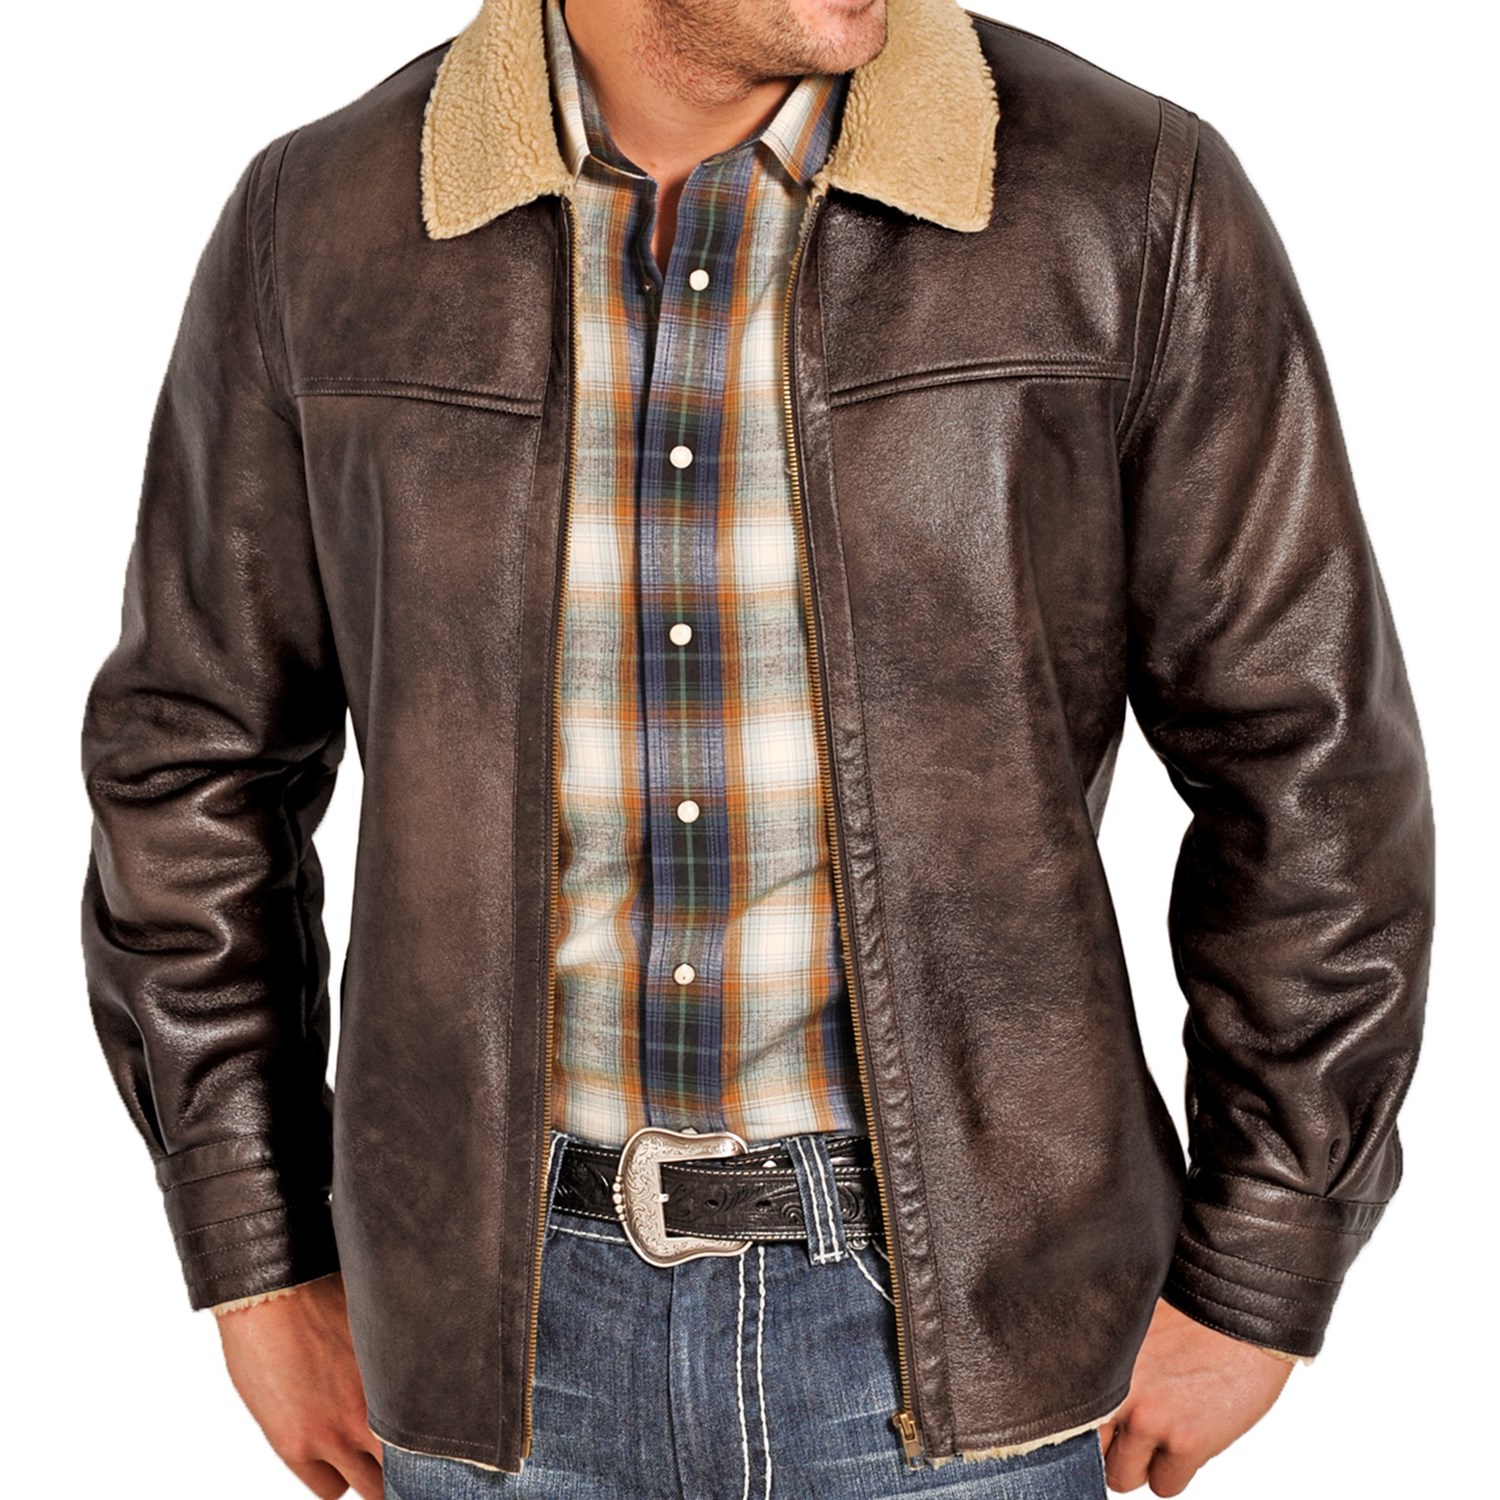 Mens leather jackets western – Modern fashion jacket photo blog